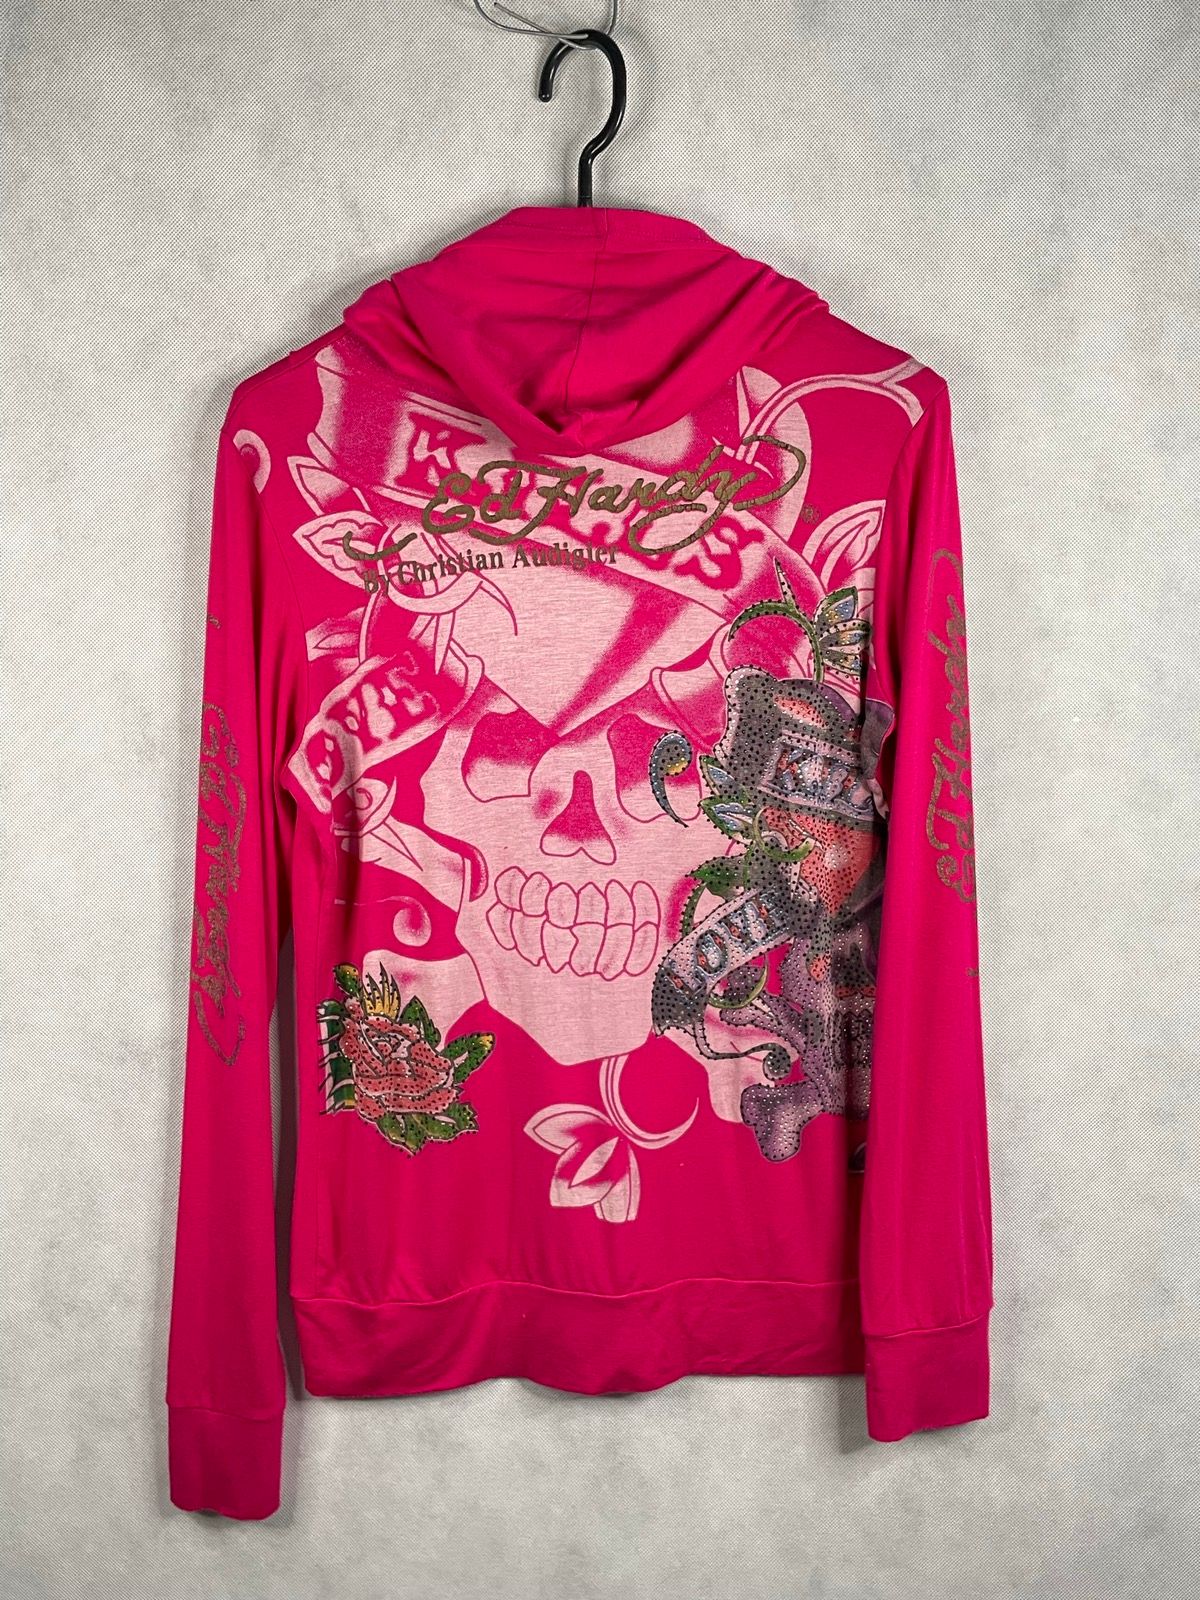 Pre-owned Christian Audigier X Ed Hardy Pink Vintage Y2k Zip Hoodie Skull Heart Overprint Ed Hardy (size Medium)